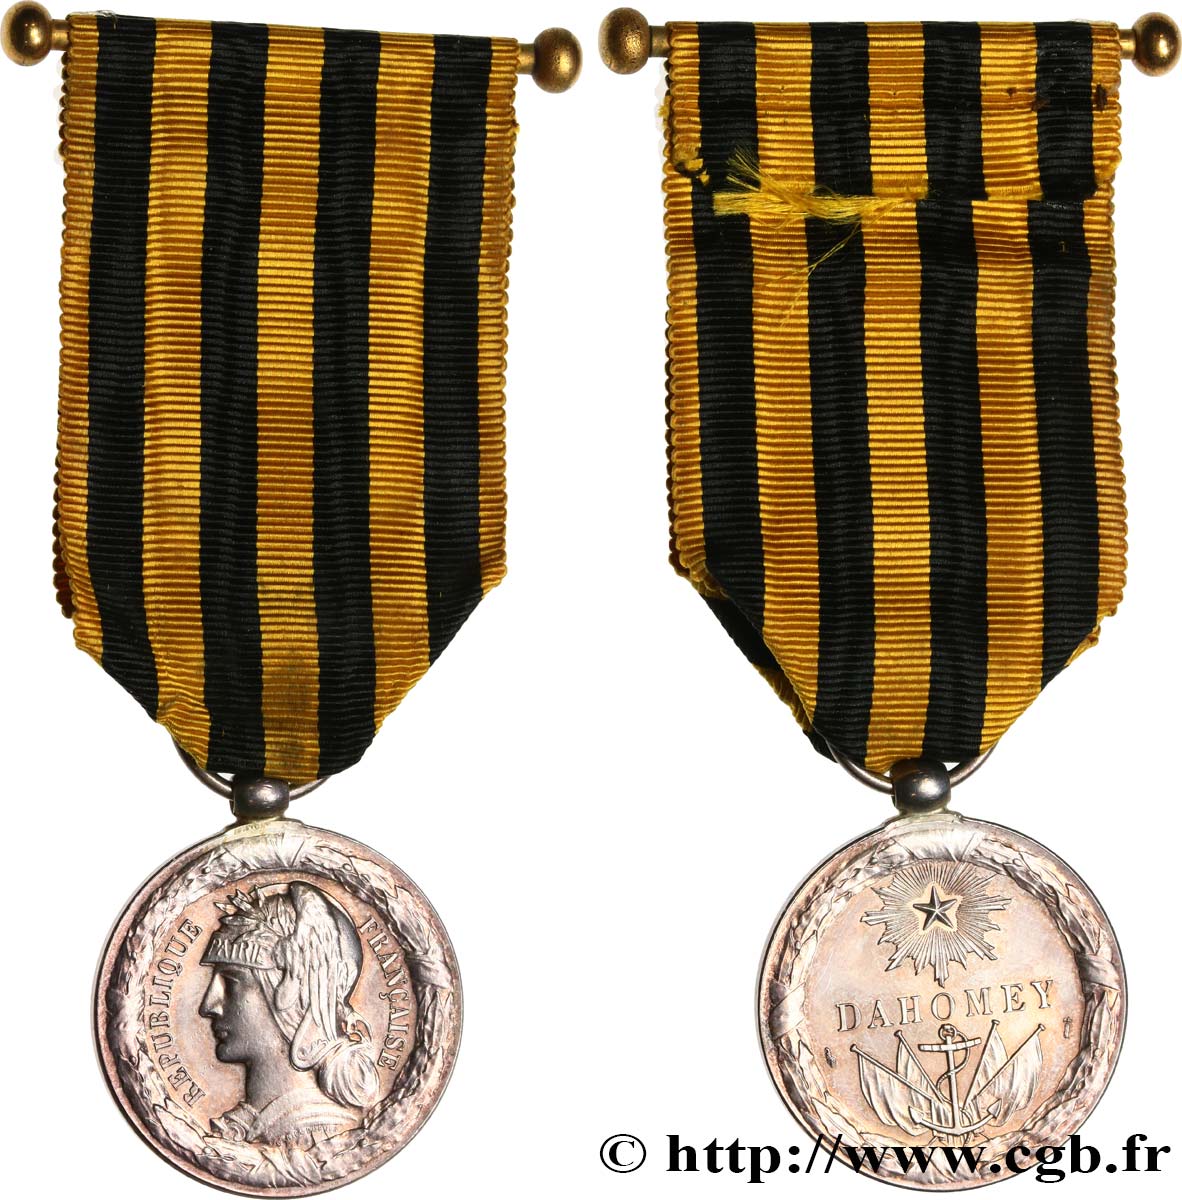 III REPUBLIC Médaille commémorative, expédition du Dahomey AU